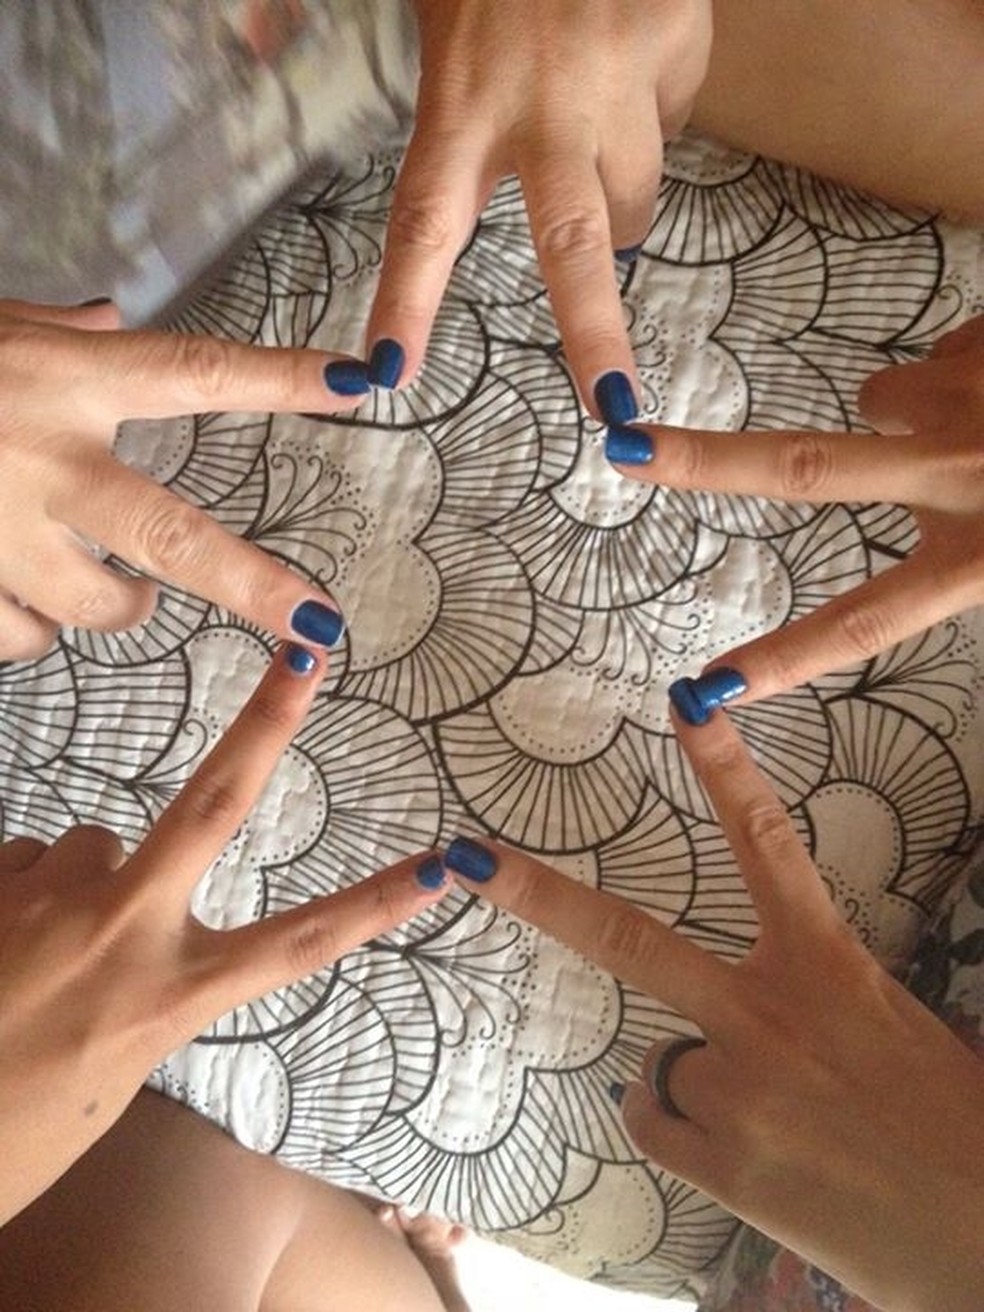 Fabiola, Jennyfer e Jordanna passaram a fazer as unhas com a mesma cor de esmalte para economizar (Foto: Arquivo pessoal)